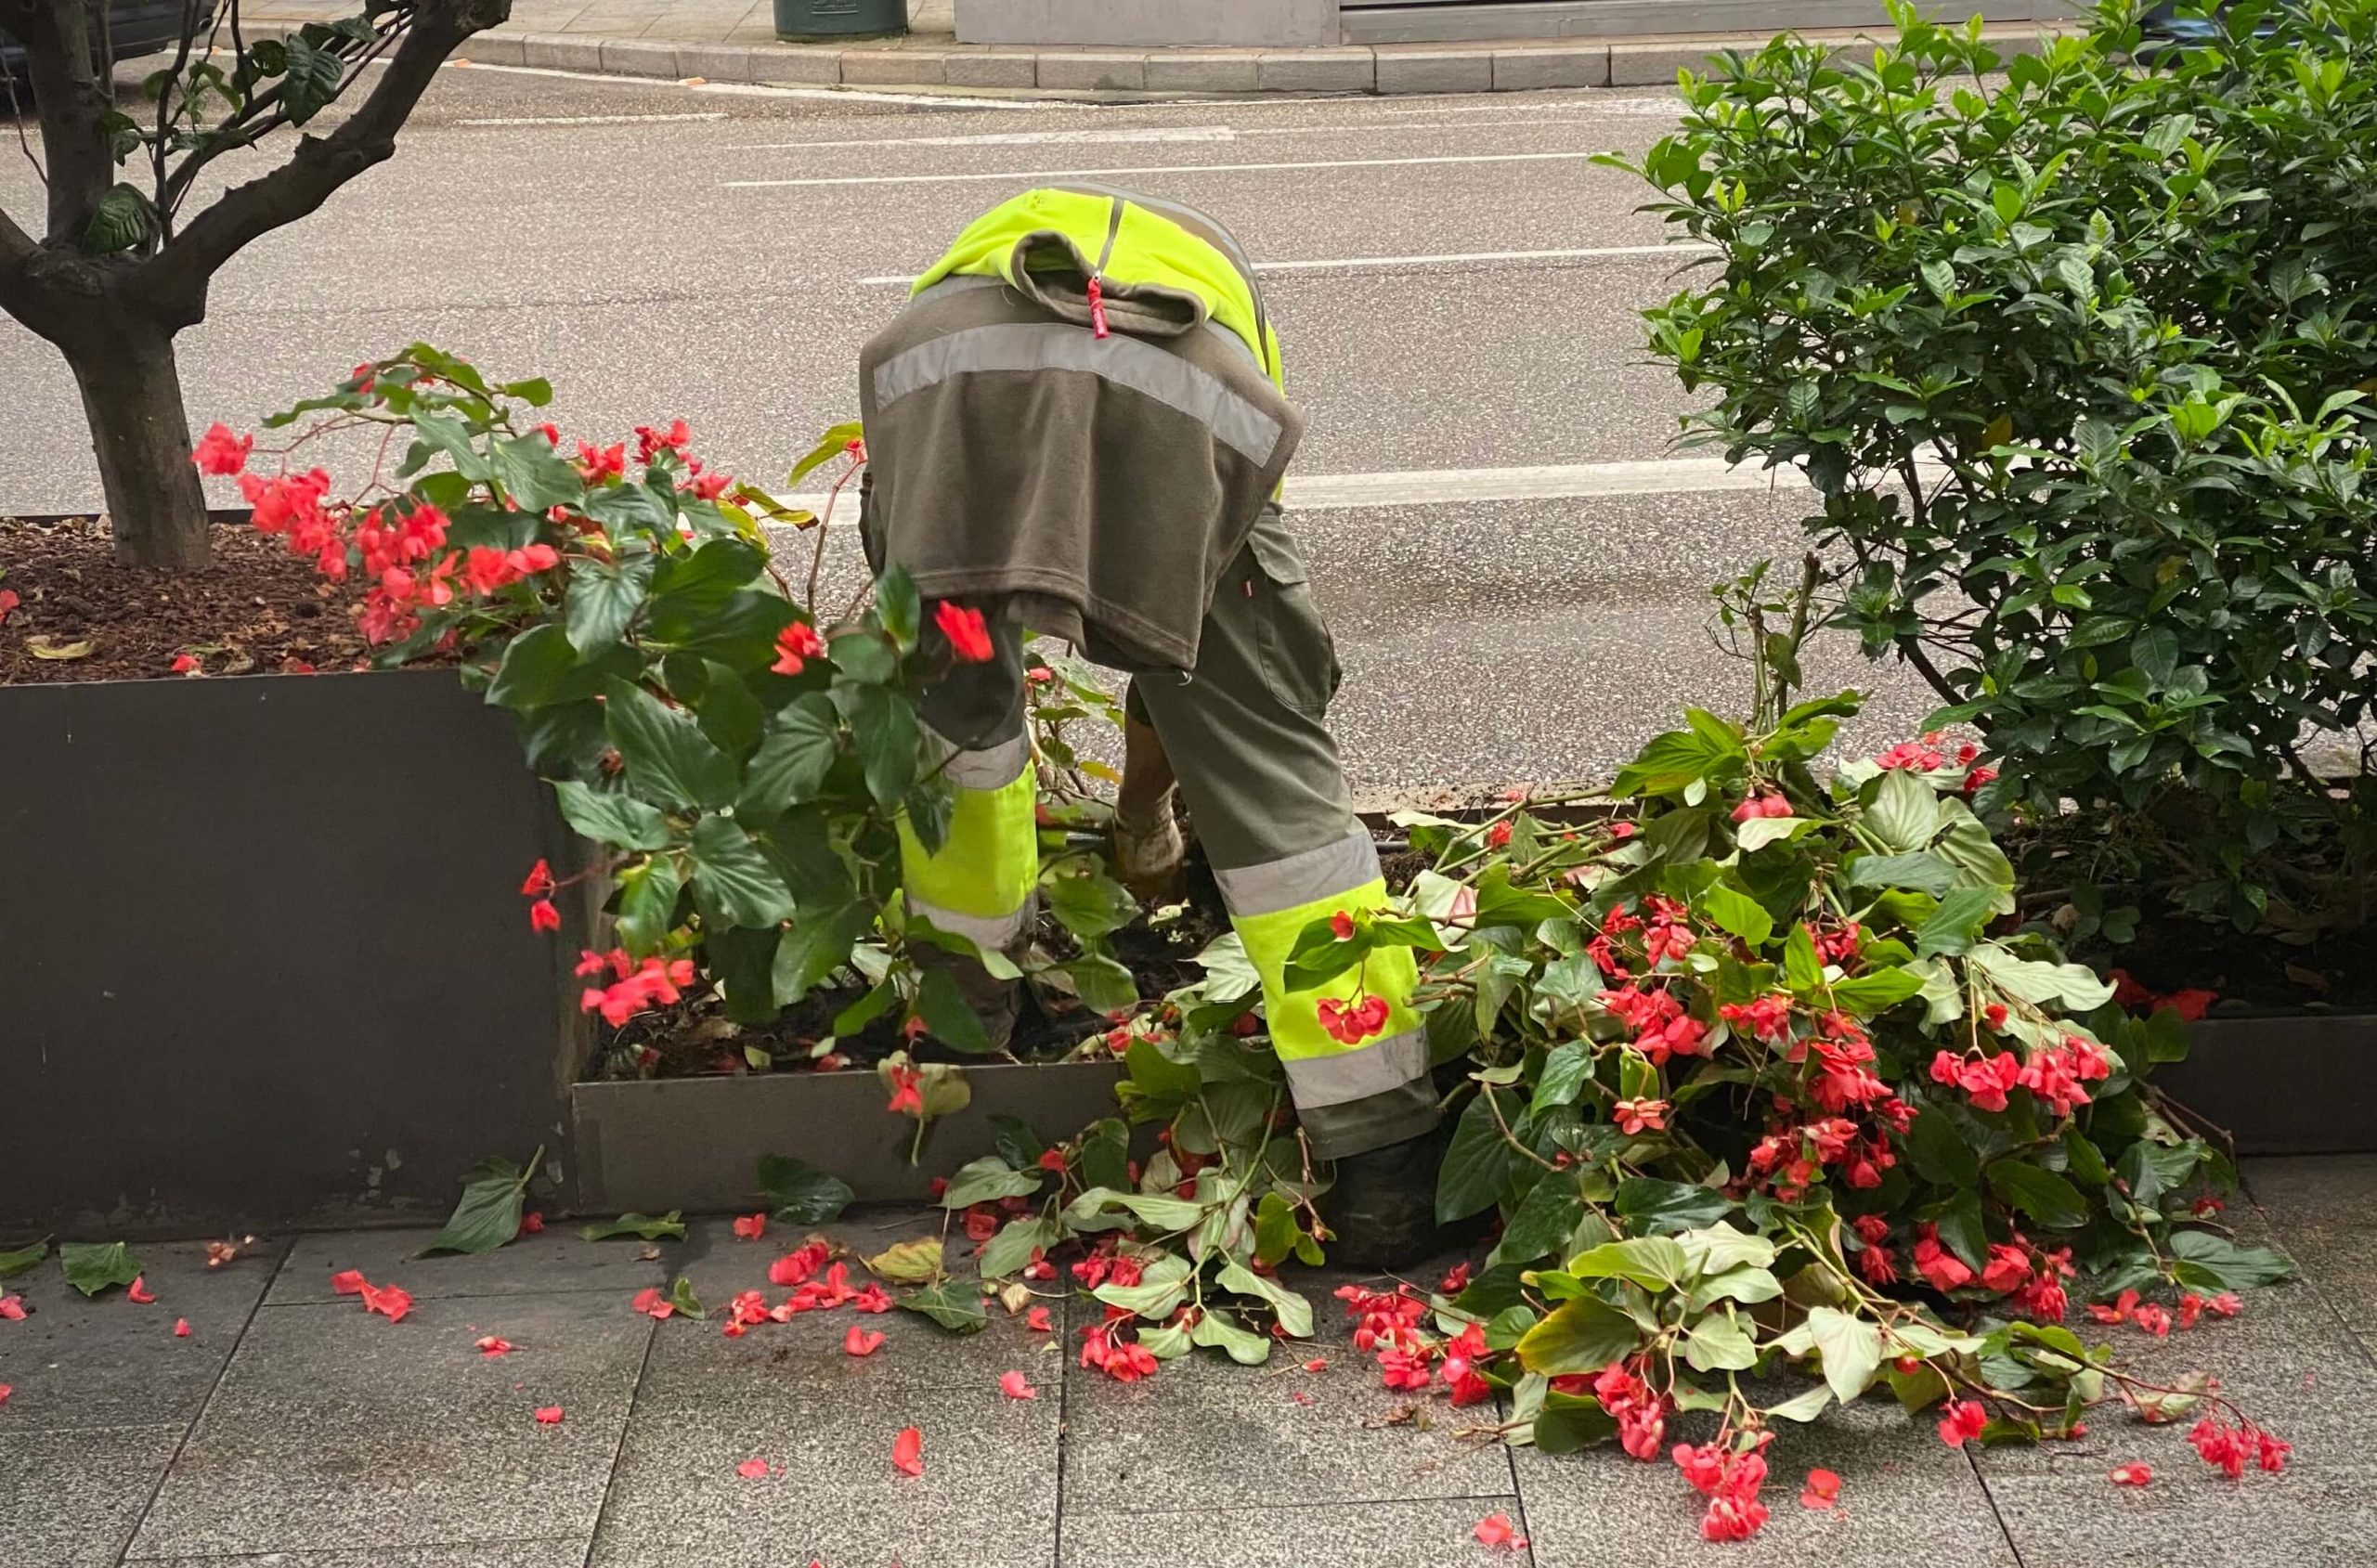 arrancando flores en la calle